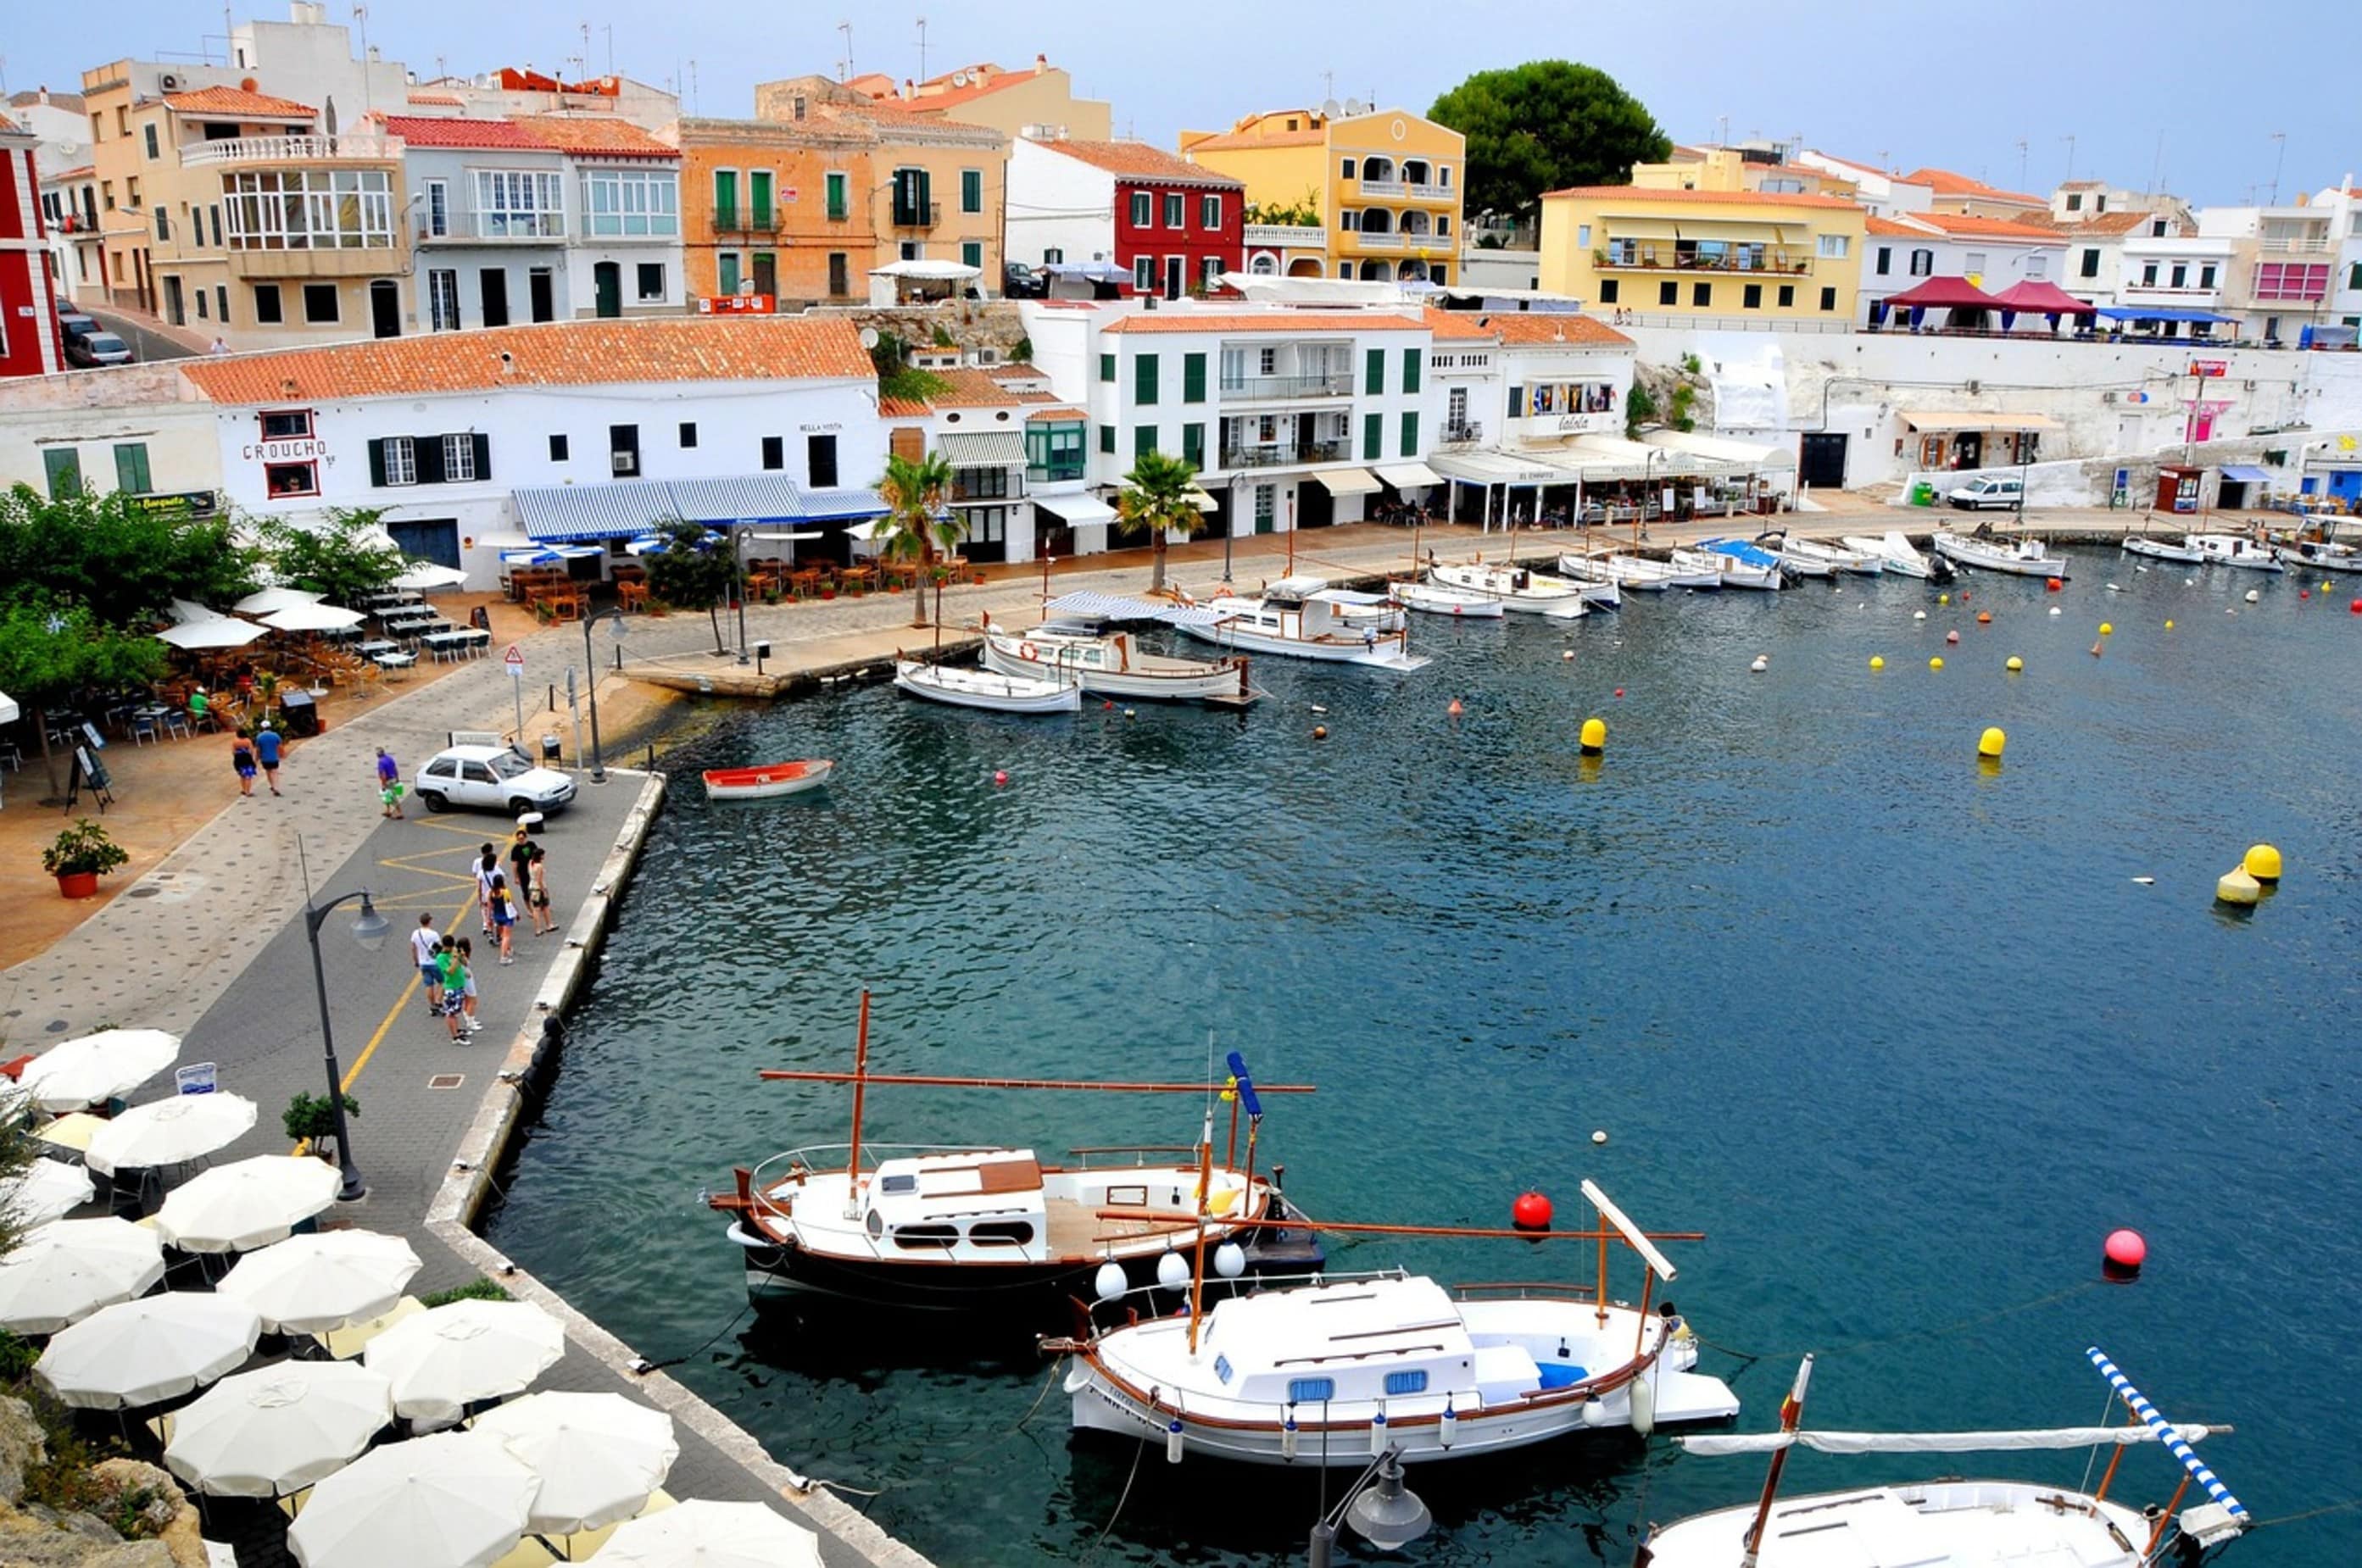 A marina on lively Menorca